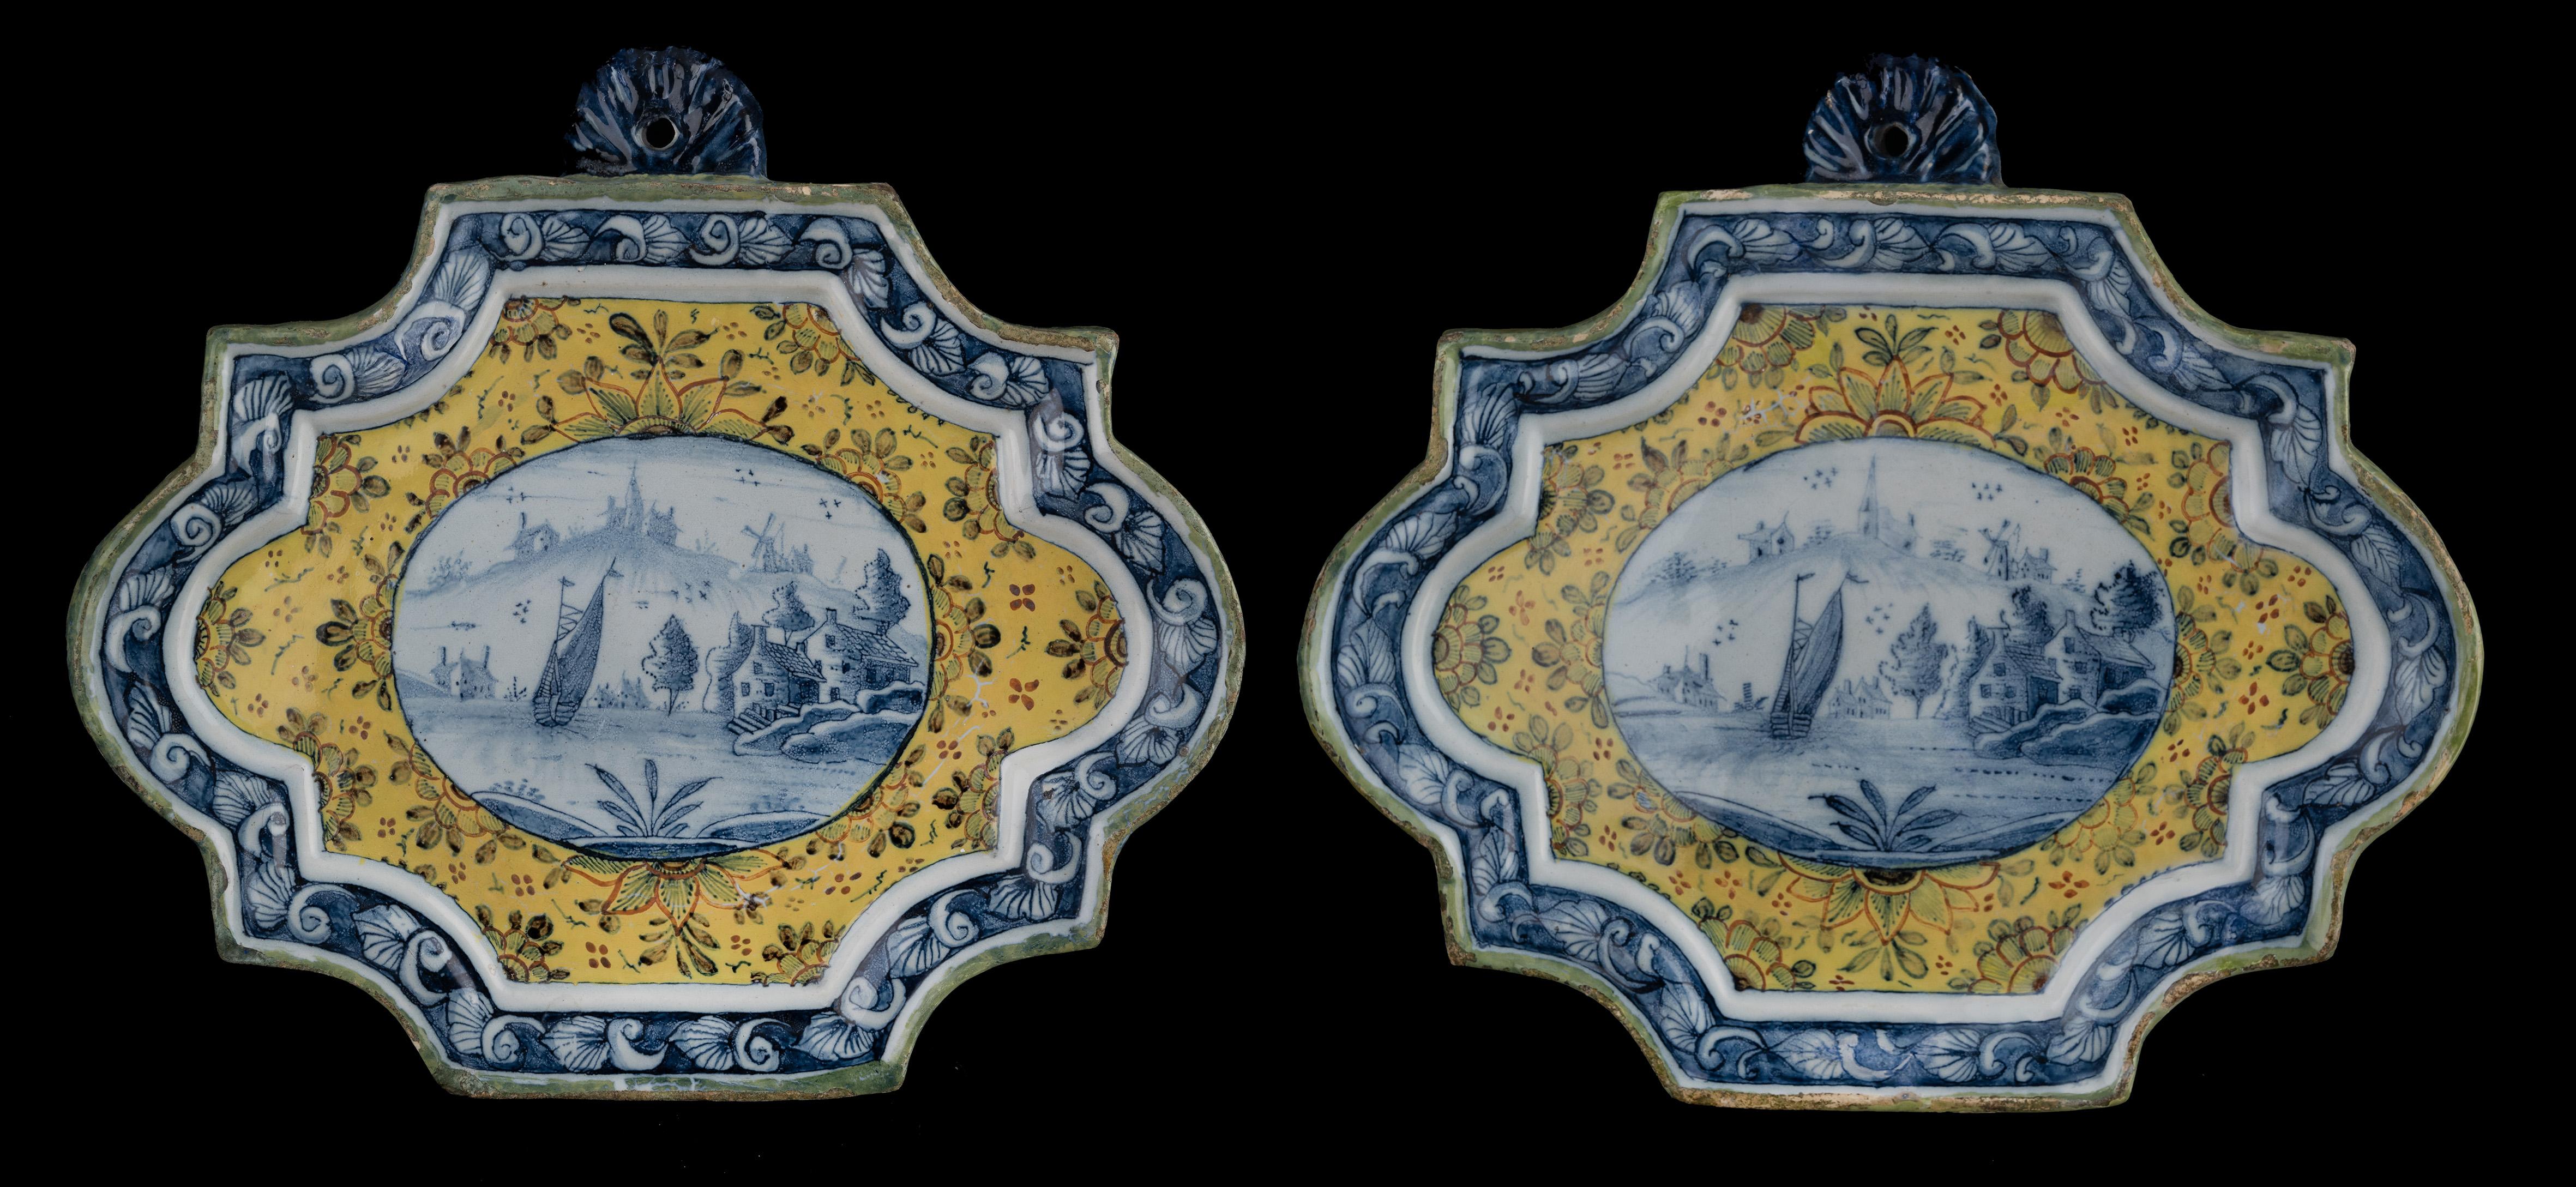 Deux plaques polychromes avec des paysages. Delft, 1750-1770

Les plaques ont une forme rectangulaire avec des coins dentelés et des côtés semi-circulaires. Le bord est modelé en relief et présente une ouverture de suspension semi-circulaire et